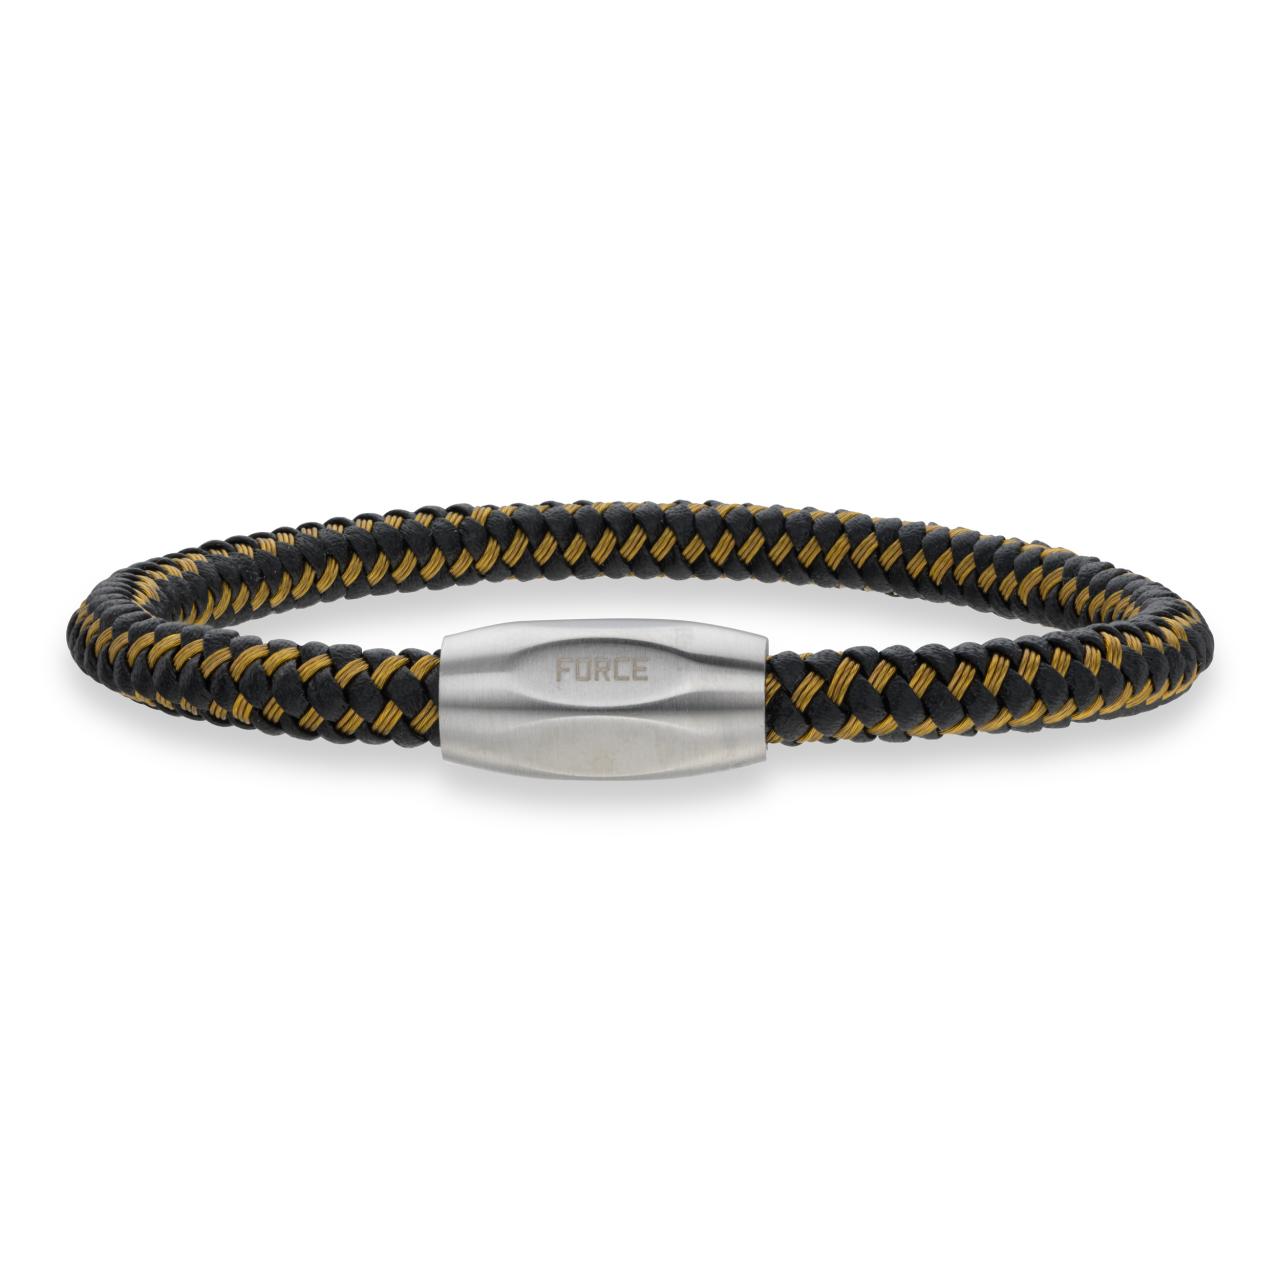 *Force armbånd guld kabel/sort læder stål lås 21cm